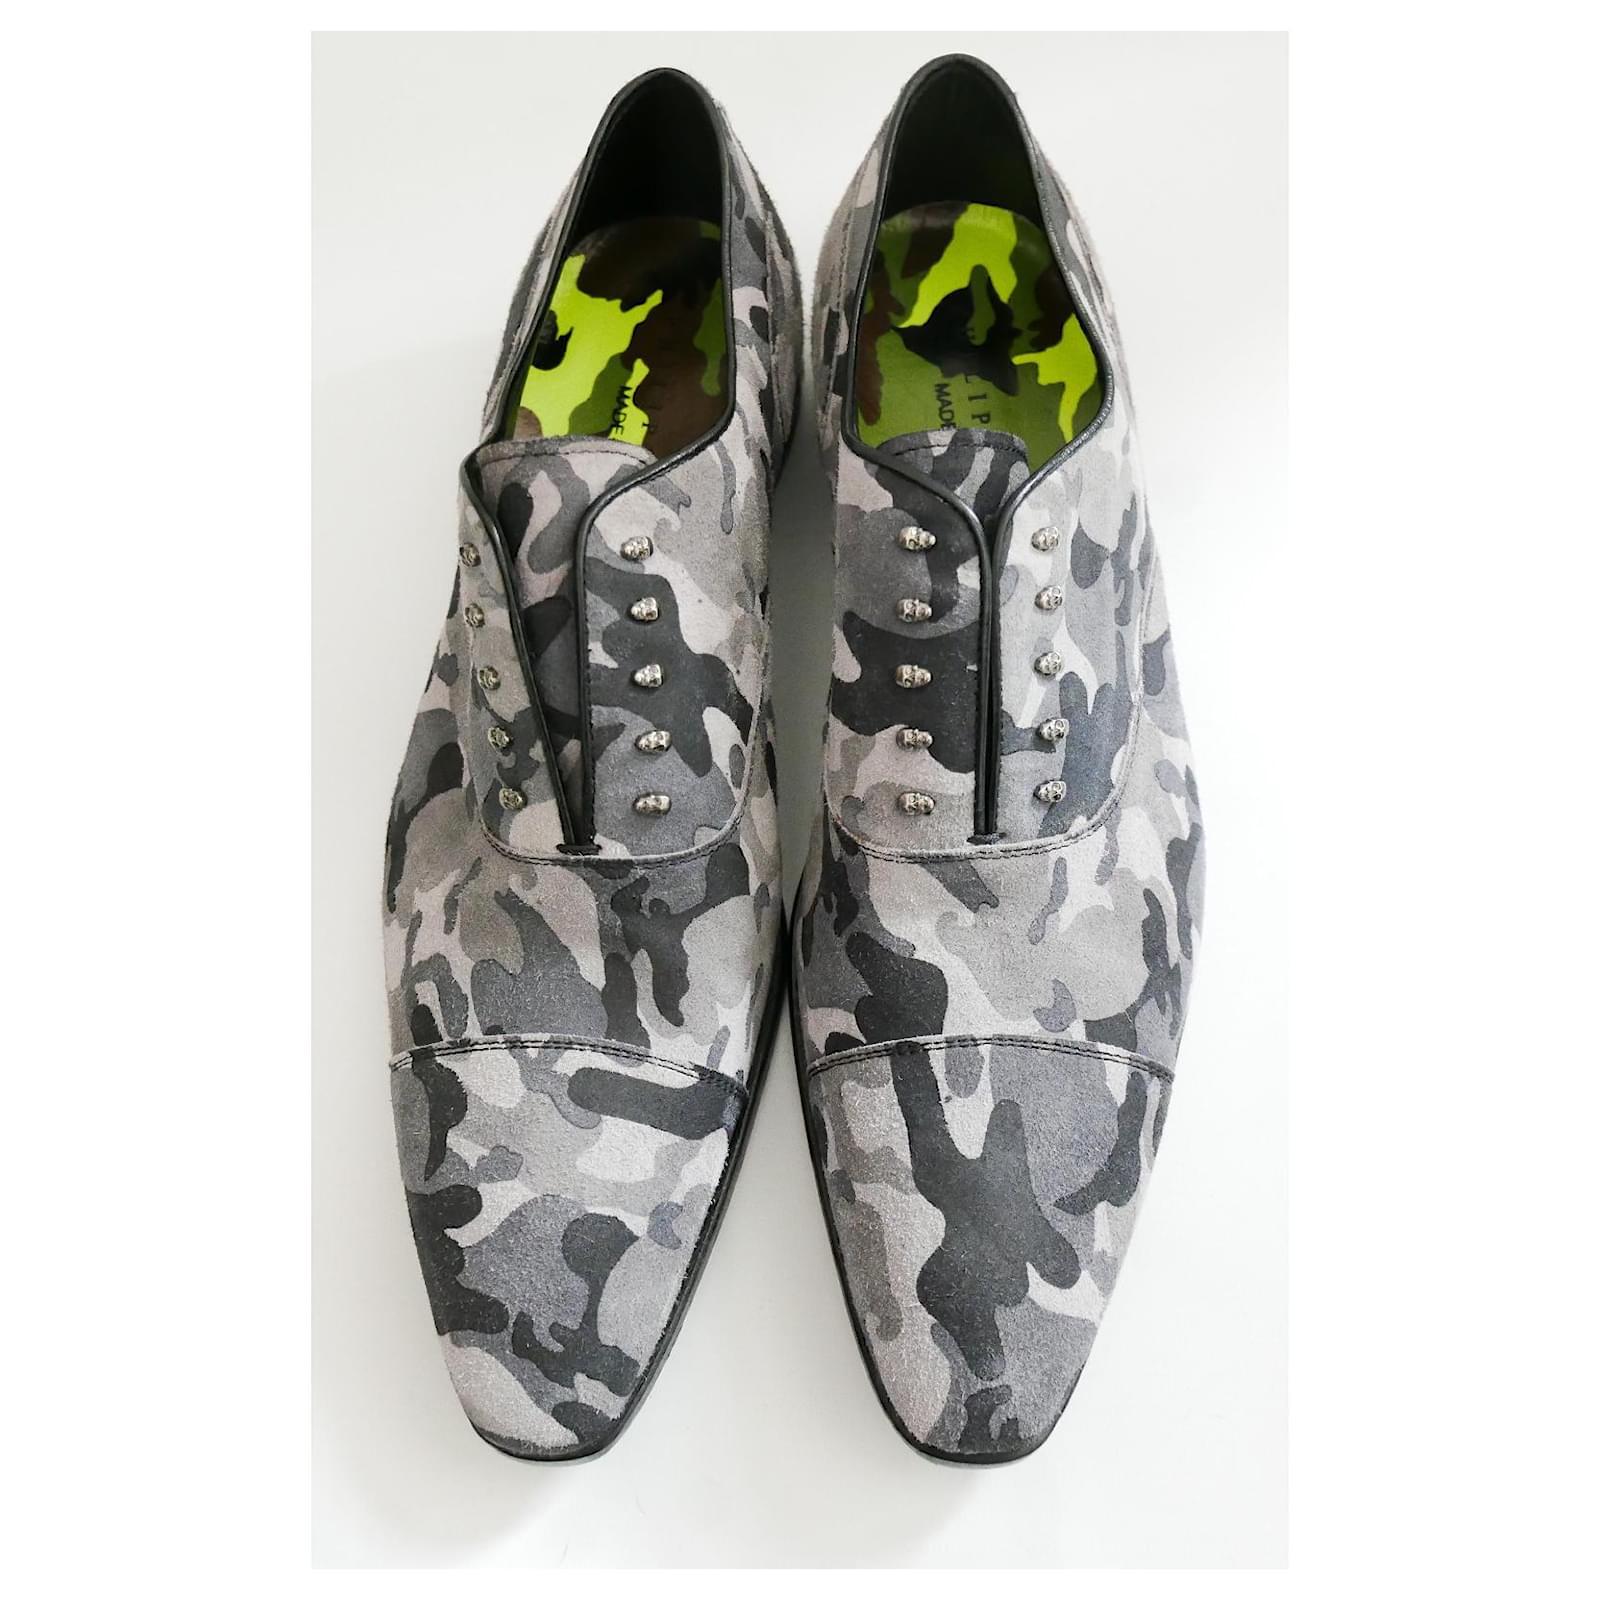 Super coole Camouflage Skull Class Schuhe aus Philipp Plein'S SS14 Kollektion. Gekauft für £700 und ungetragen mit Aufklebern, Box und bedrucktem Tuch. Aus gebürstetem Wildleder mit grauem Tarnmuster und schwarzem Lederrand, winzige Totenköpfe auf